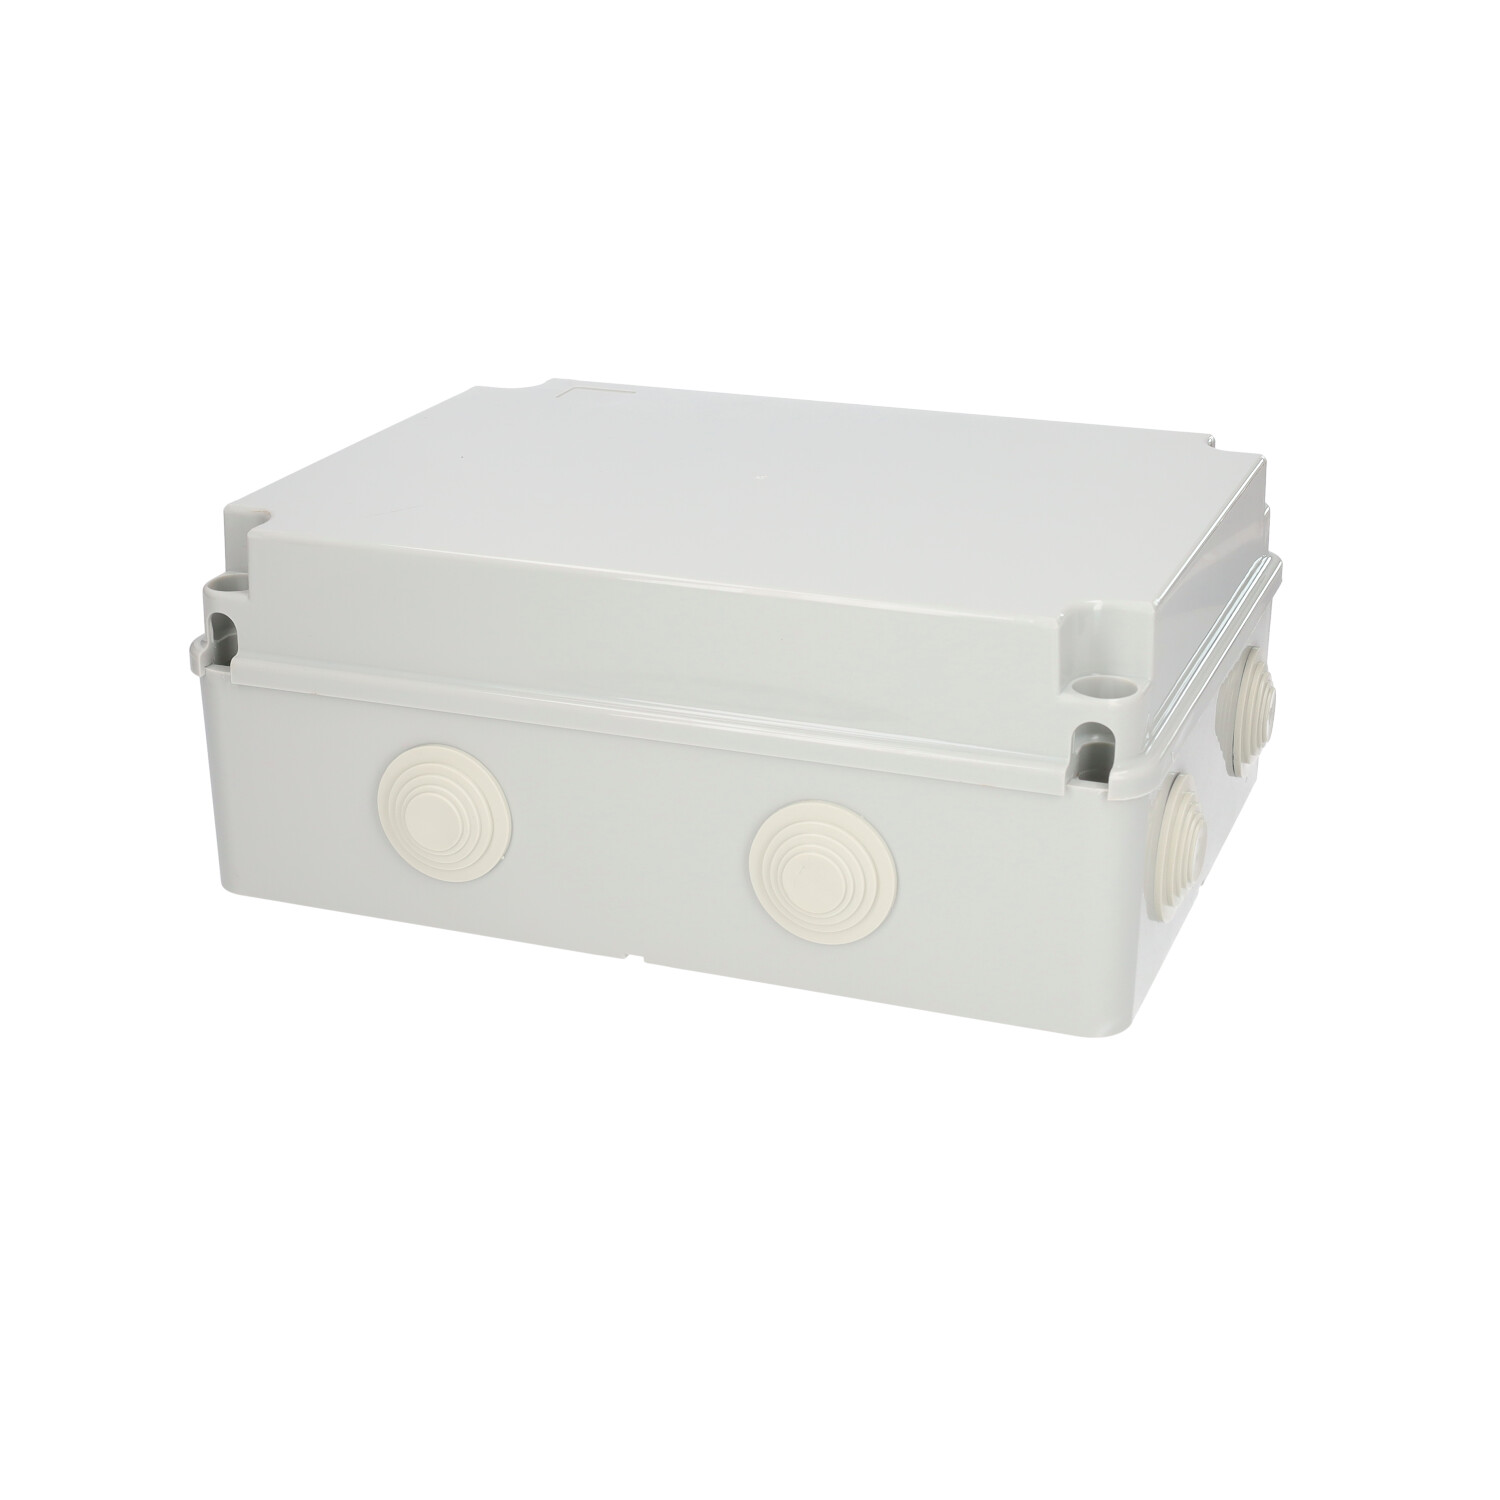 Caja conexión rectangular 300x220x120mm IP55 Gris